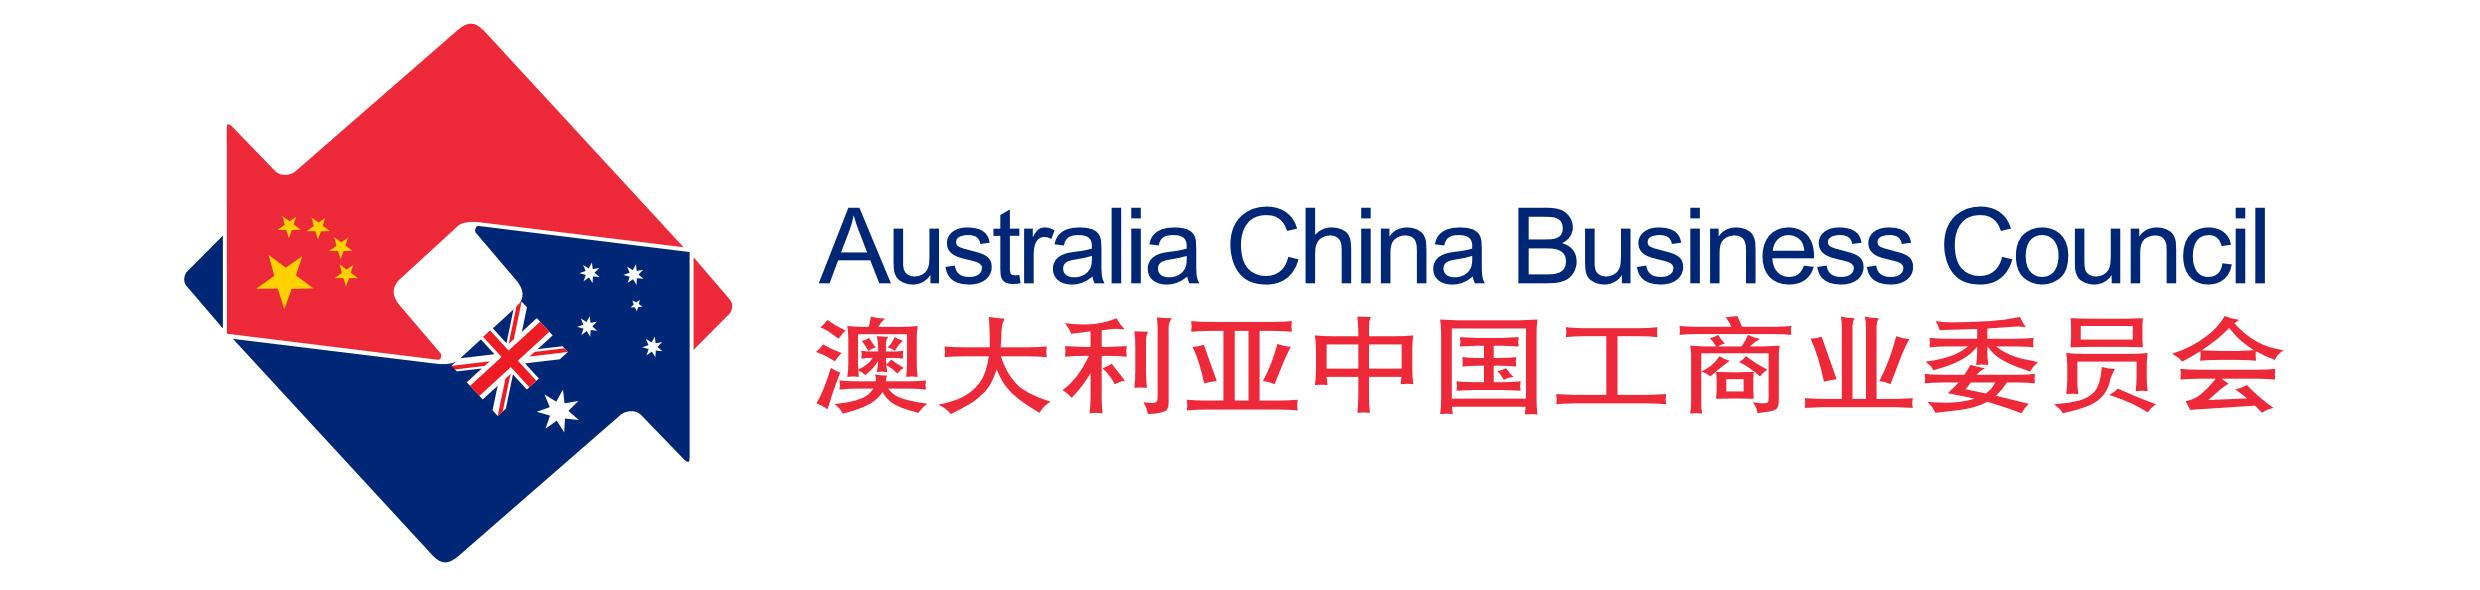 Australia China Business Council WA Branch